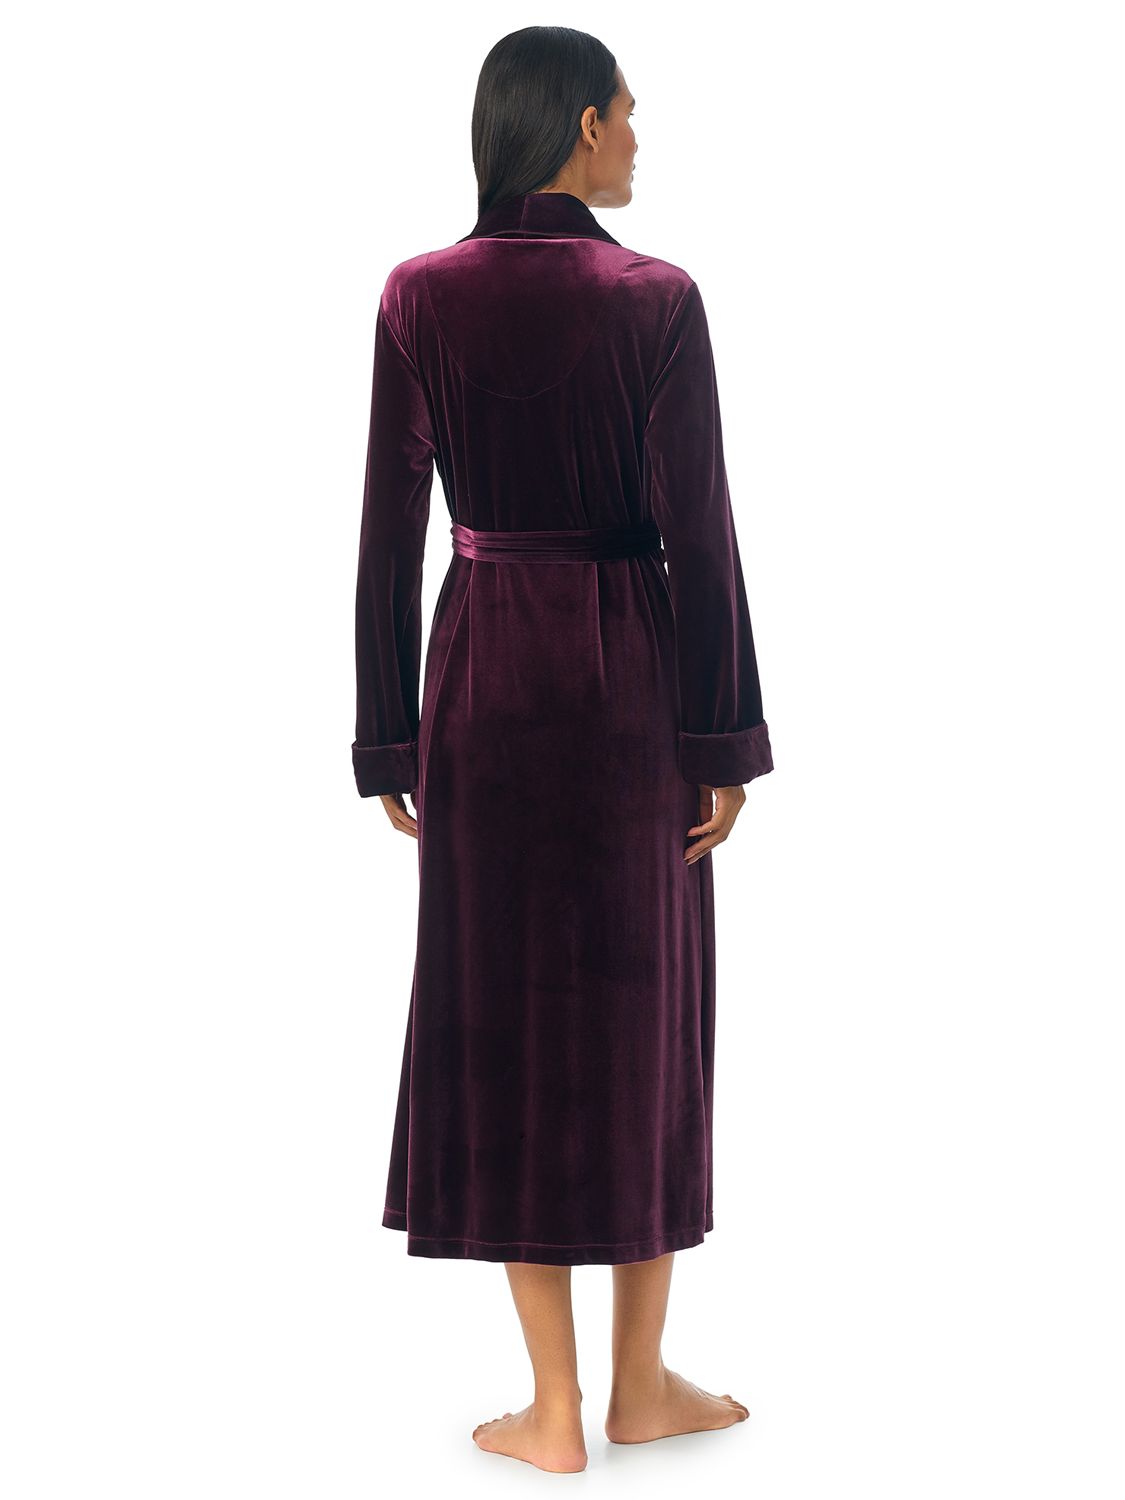 Lauren Ralph Lauren Velvet Robe, Burgundy at John Lewis & Partners